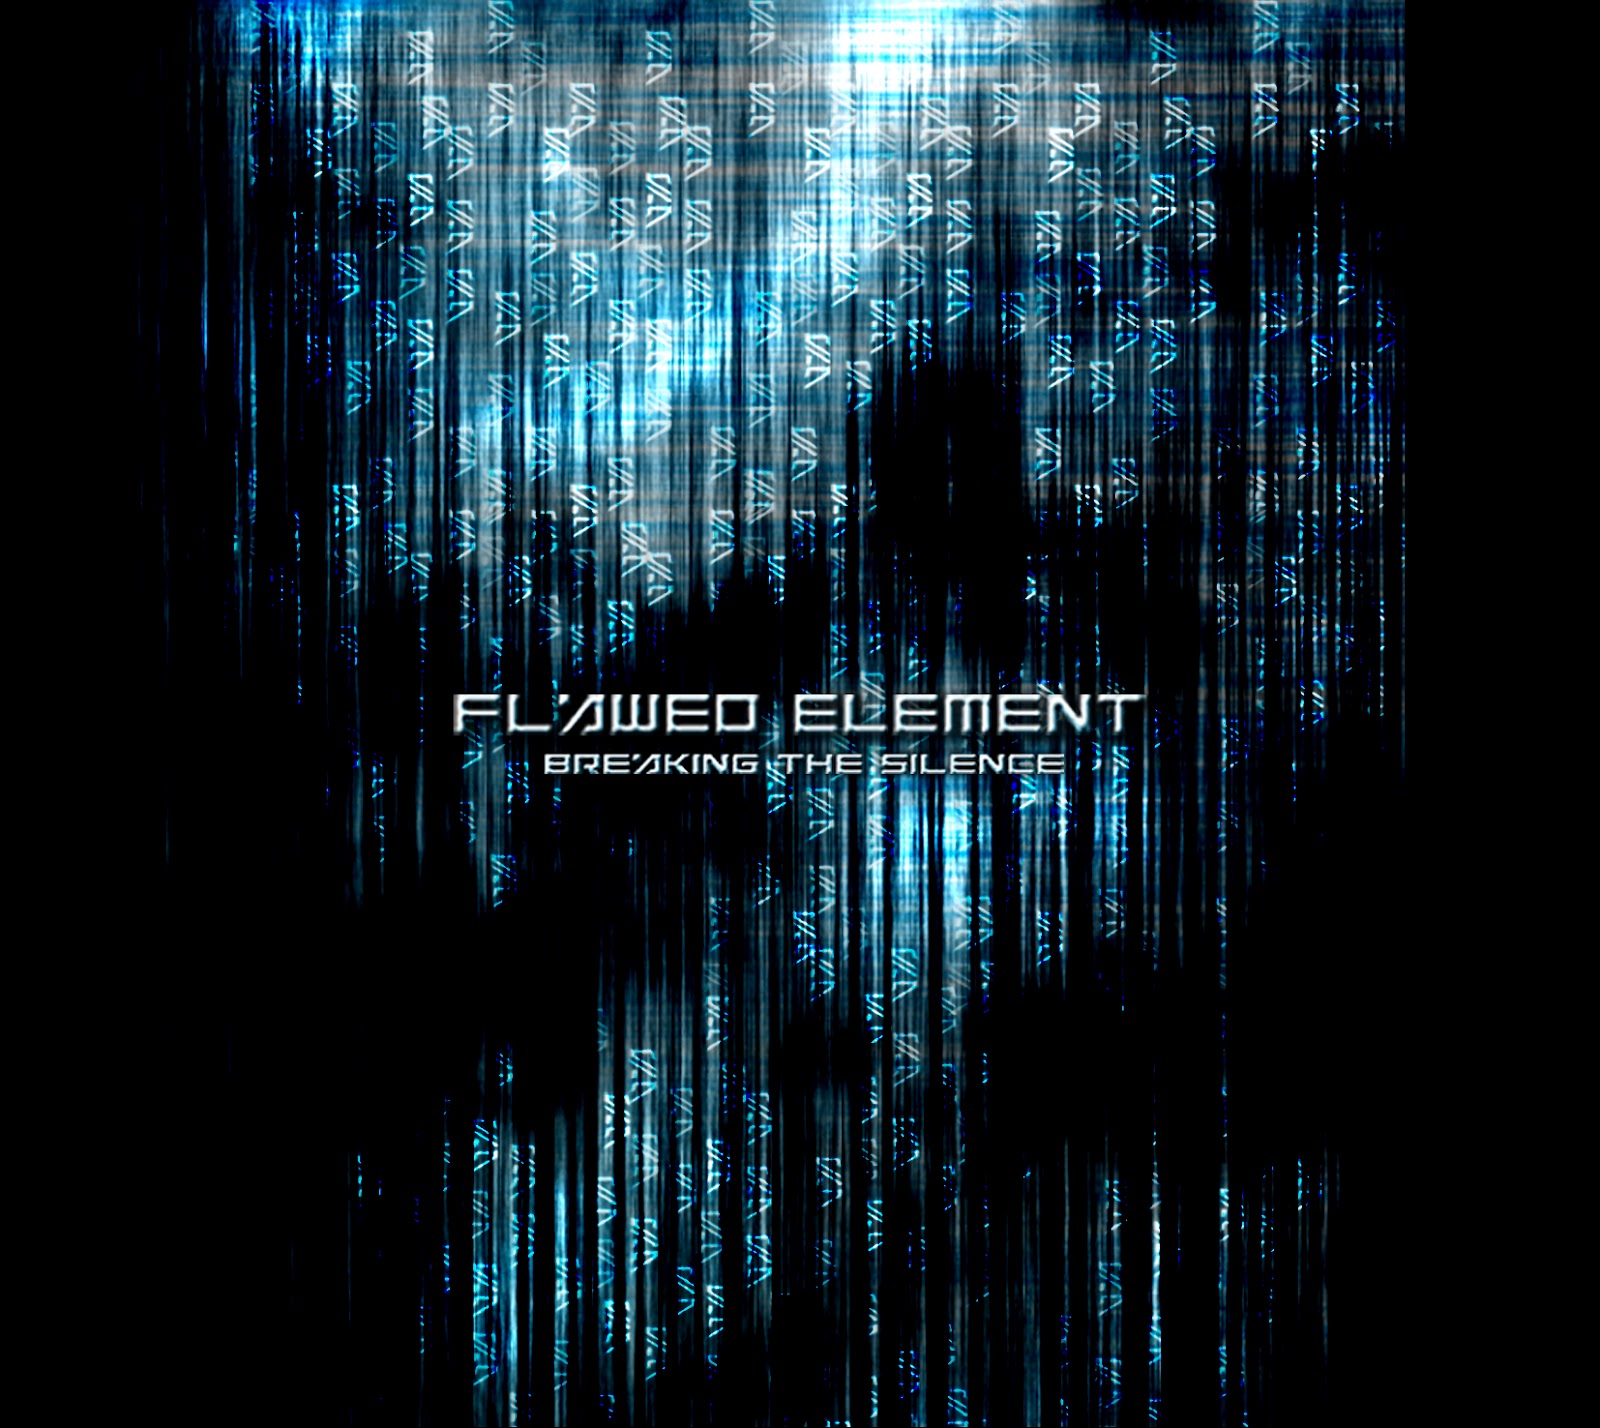 Breaking elements. Flawed element. Flawed. 04.Breaking the Silence - 2011. Adakain silhouette of Lies.